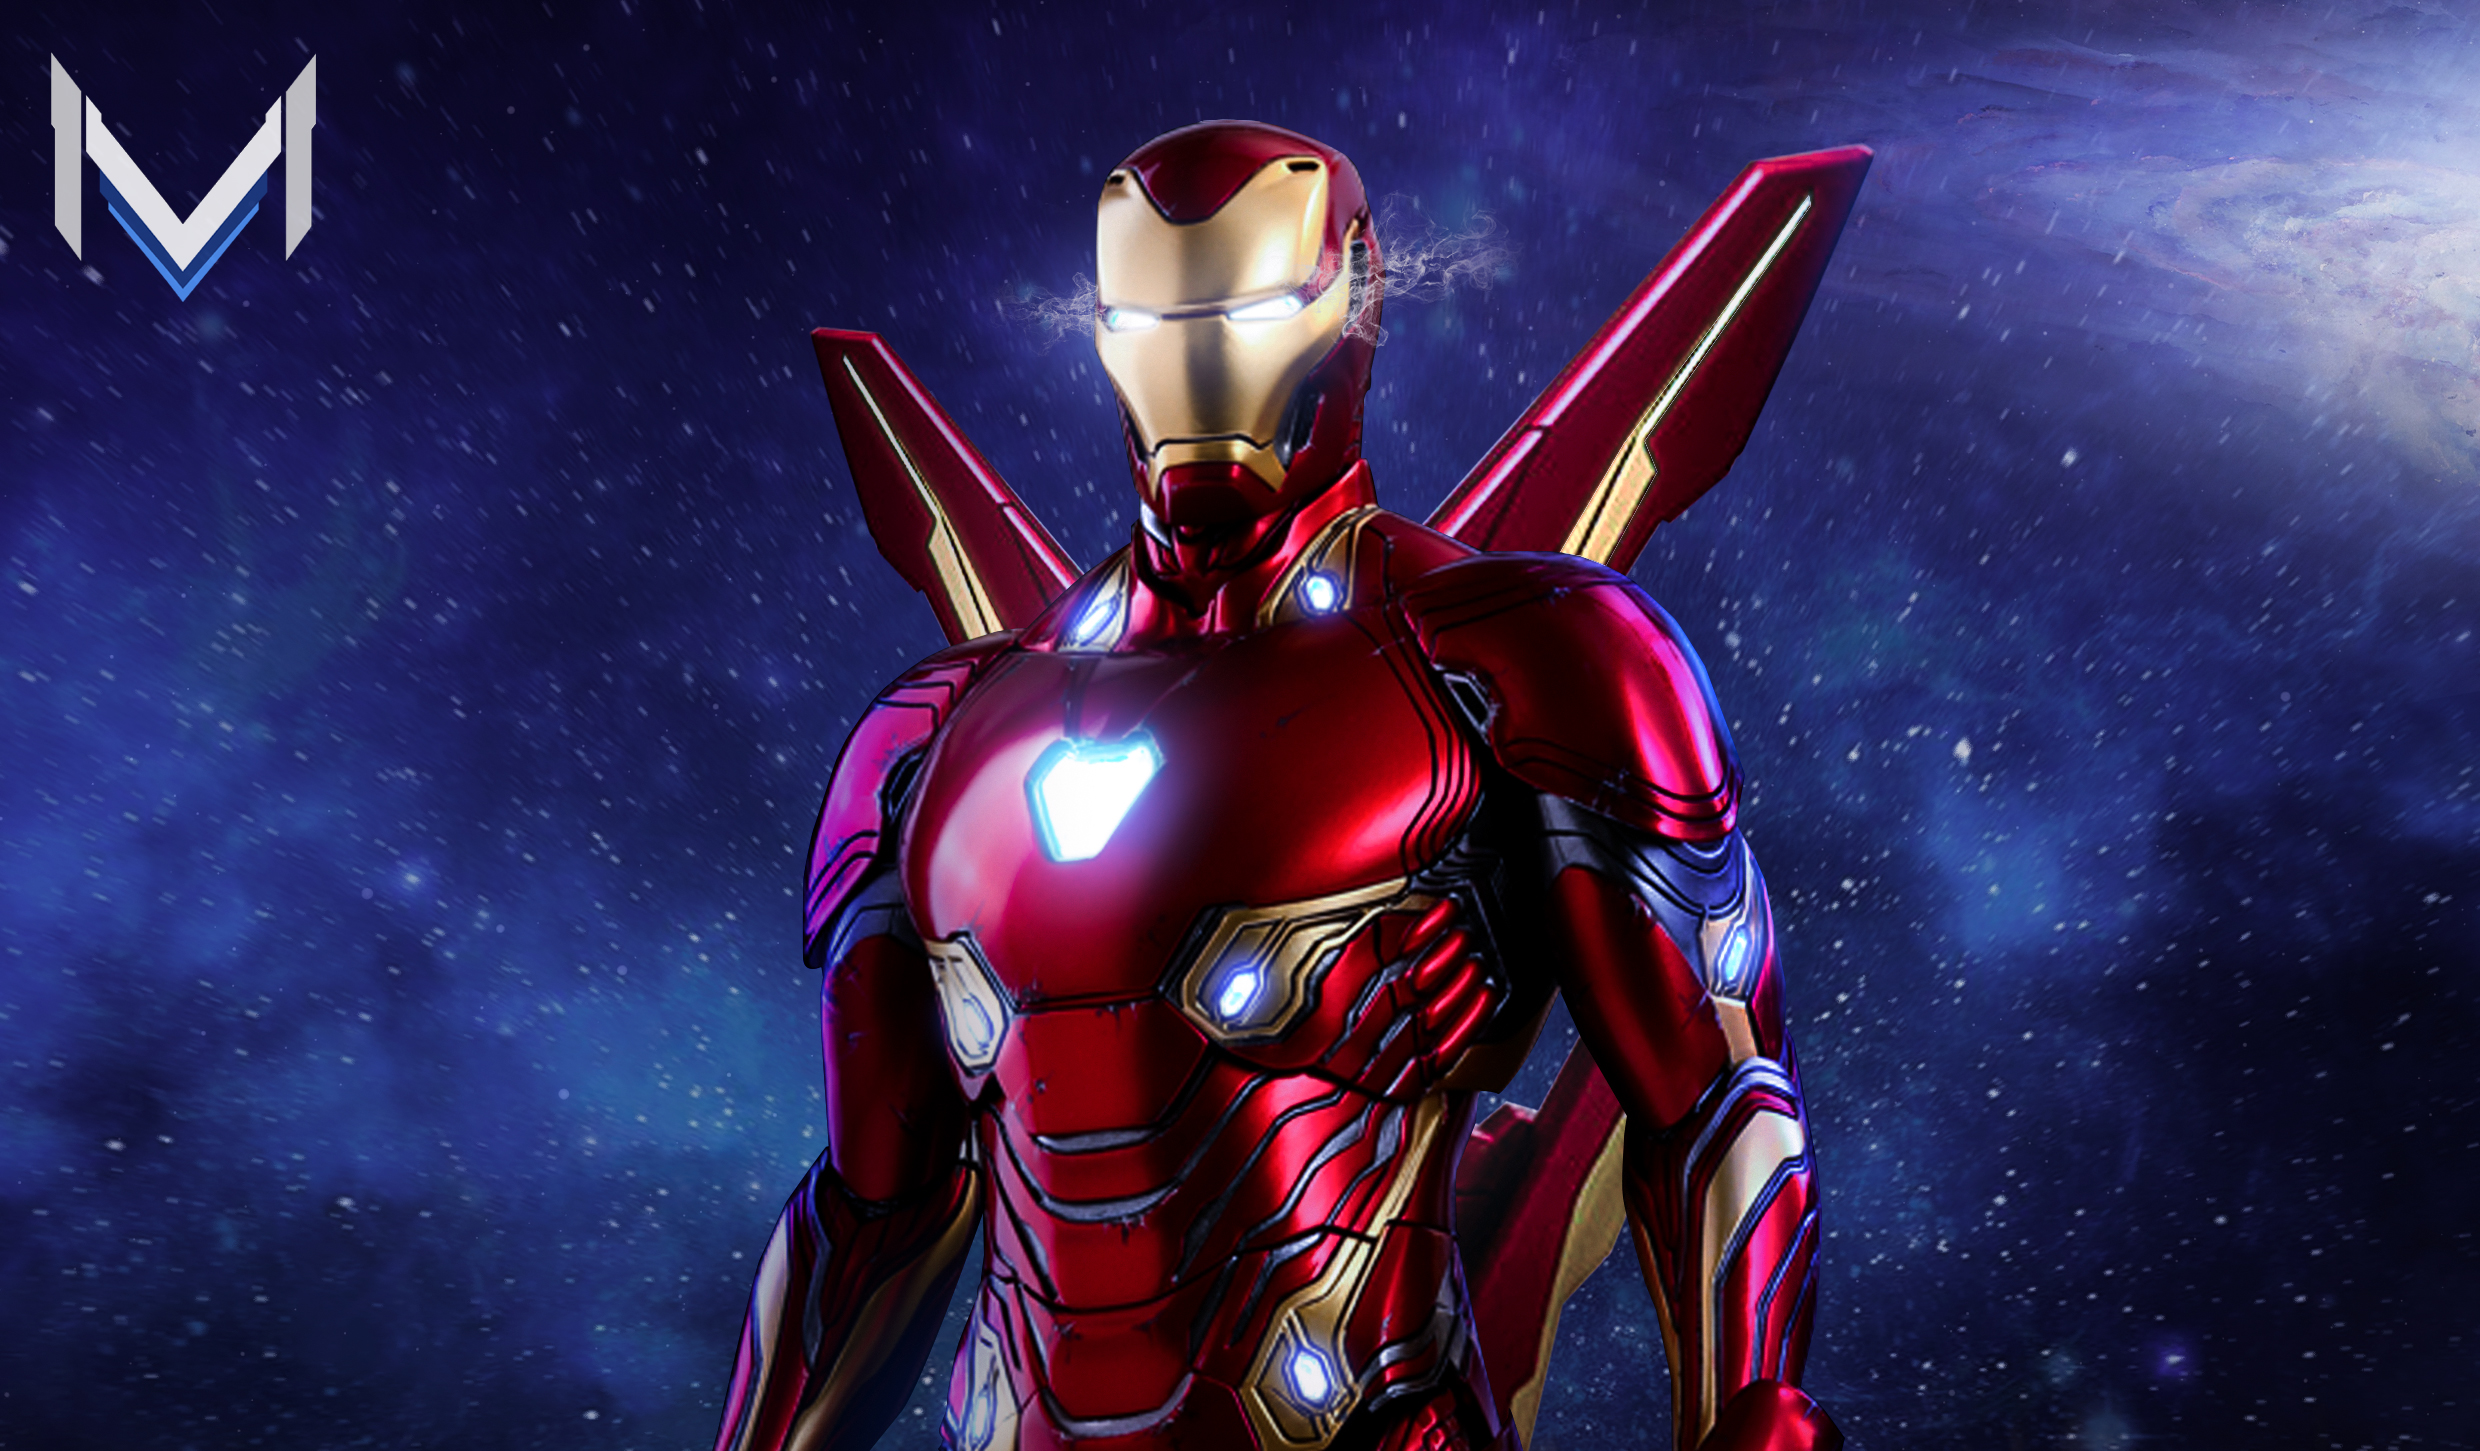 Download mobile wallpaper Iron Man, Avengers, Armor, Movie, Superhero, Tony Stark, The Avengers, Avengers Endgame for free.